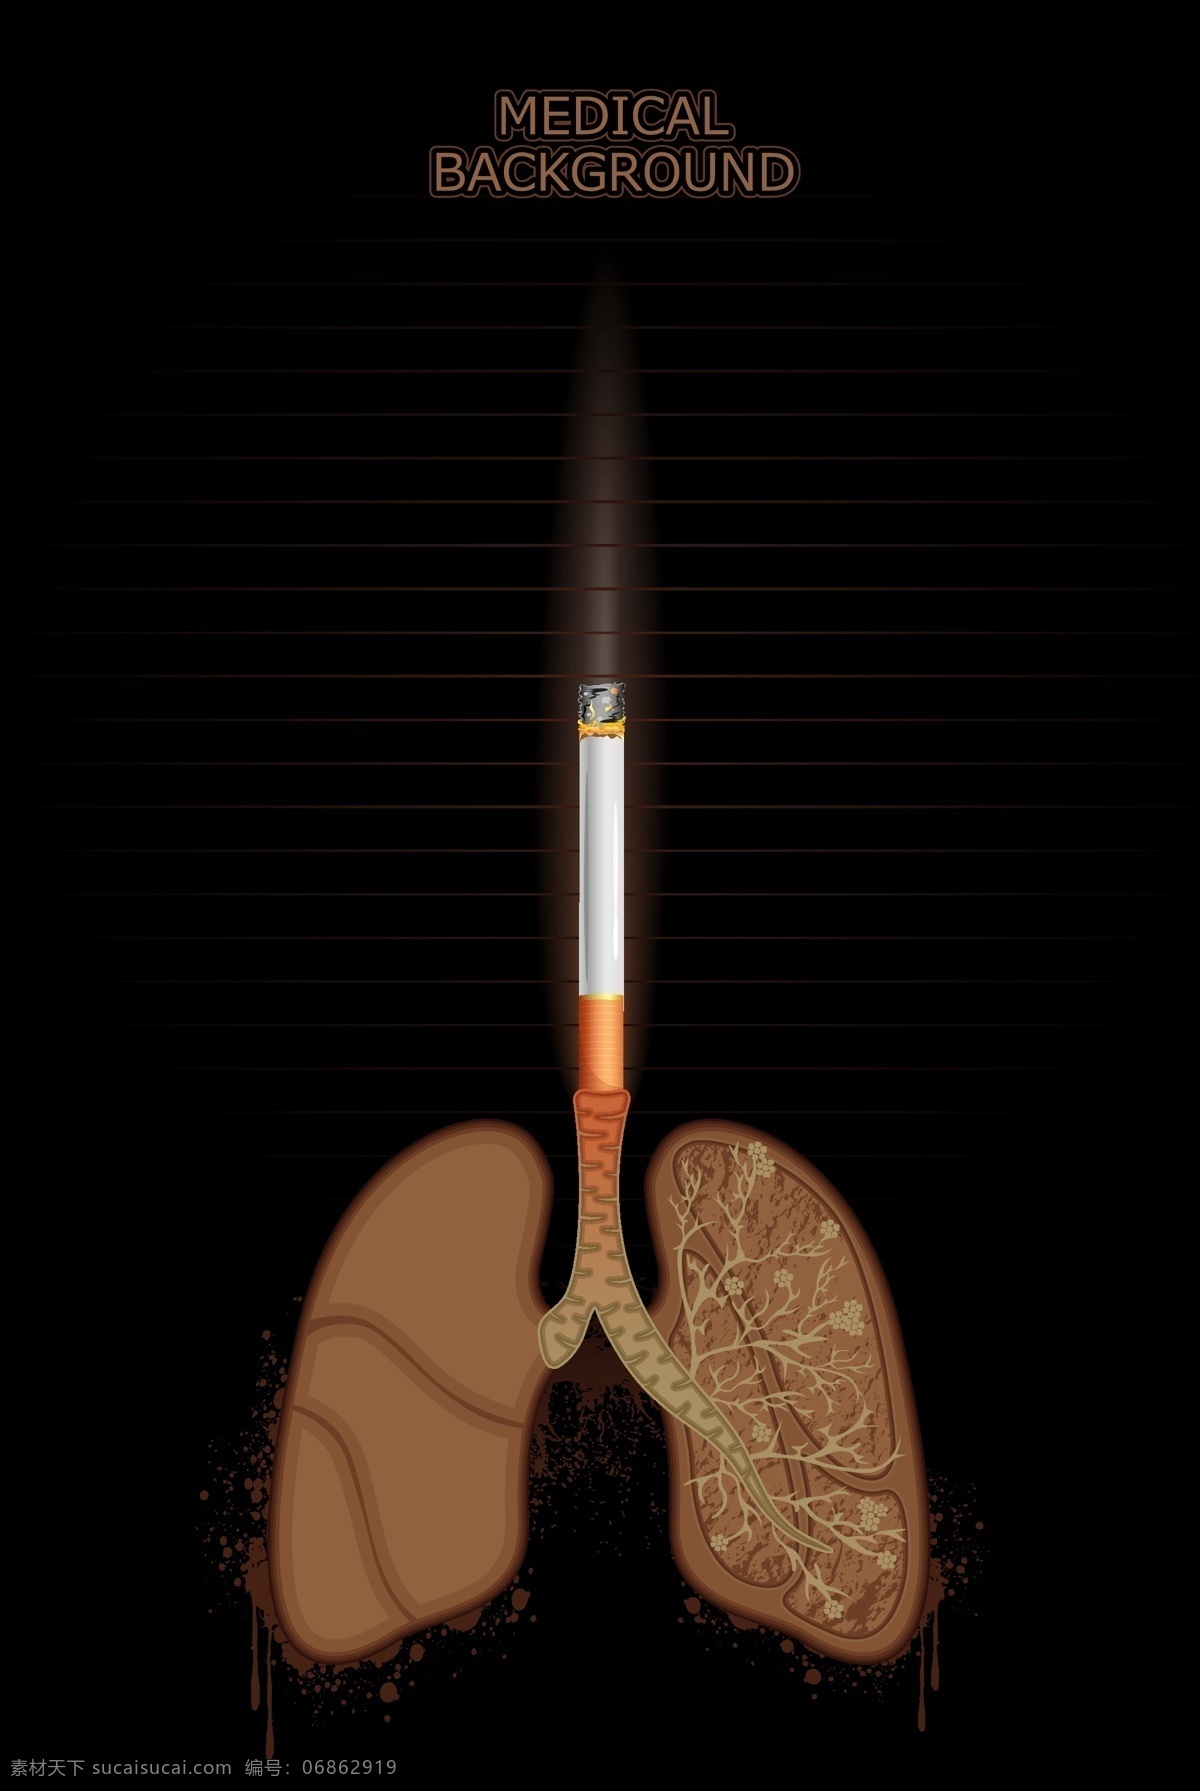 吸 煙 危害 肺部 健康 醫 護 海 報 矢量 圖 吸煙危害肺部 健康醫護海報